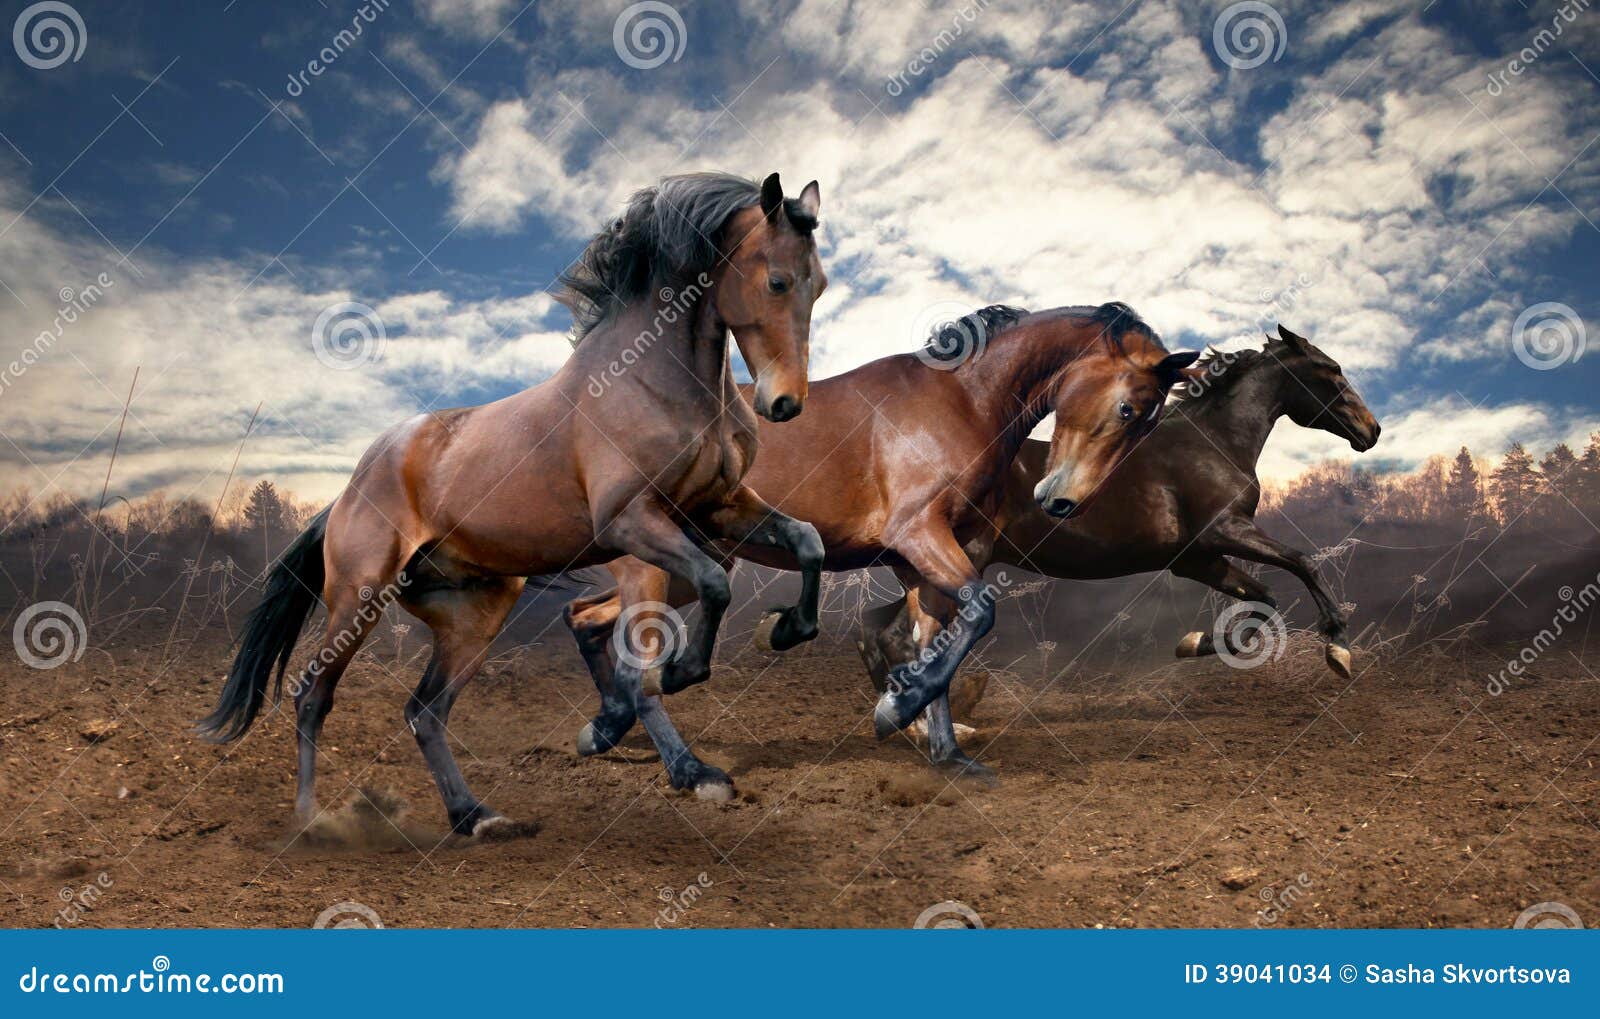 wild jump bay horses